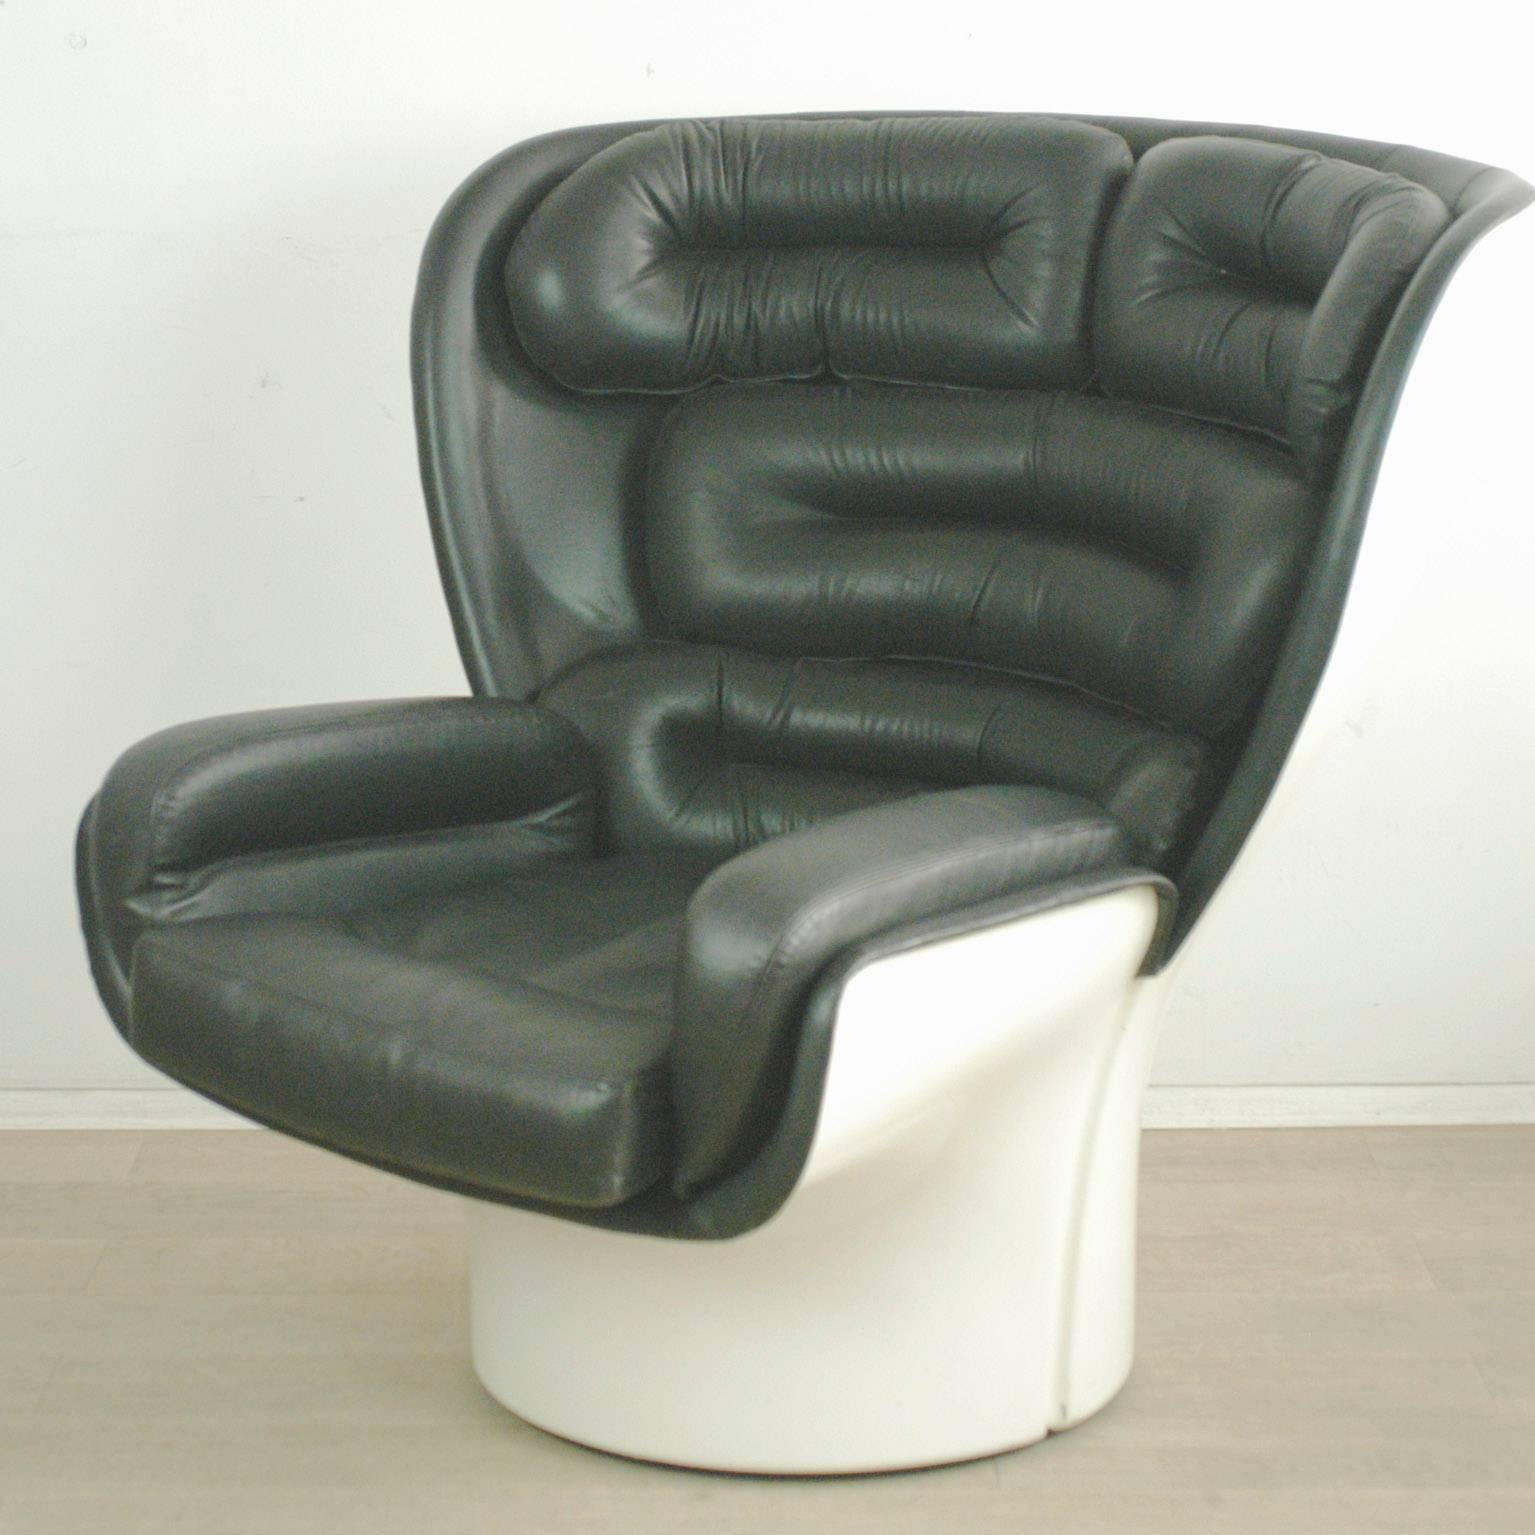 Joe Colombos kultiger und bequemer Elda-Stuhl aus den 1960er Jahren mit weißer Fiberglasschale und schwarzem Leder:: drehbarem Untergestell. Ein tolles Highlight für jedes modernistische Interieur!